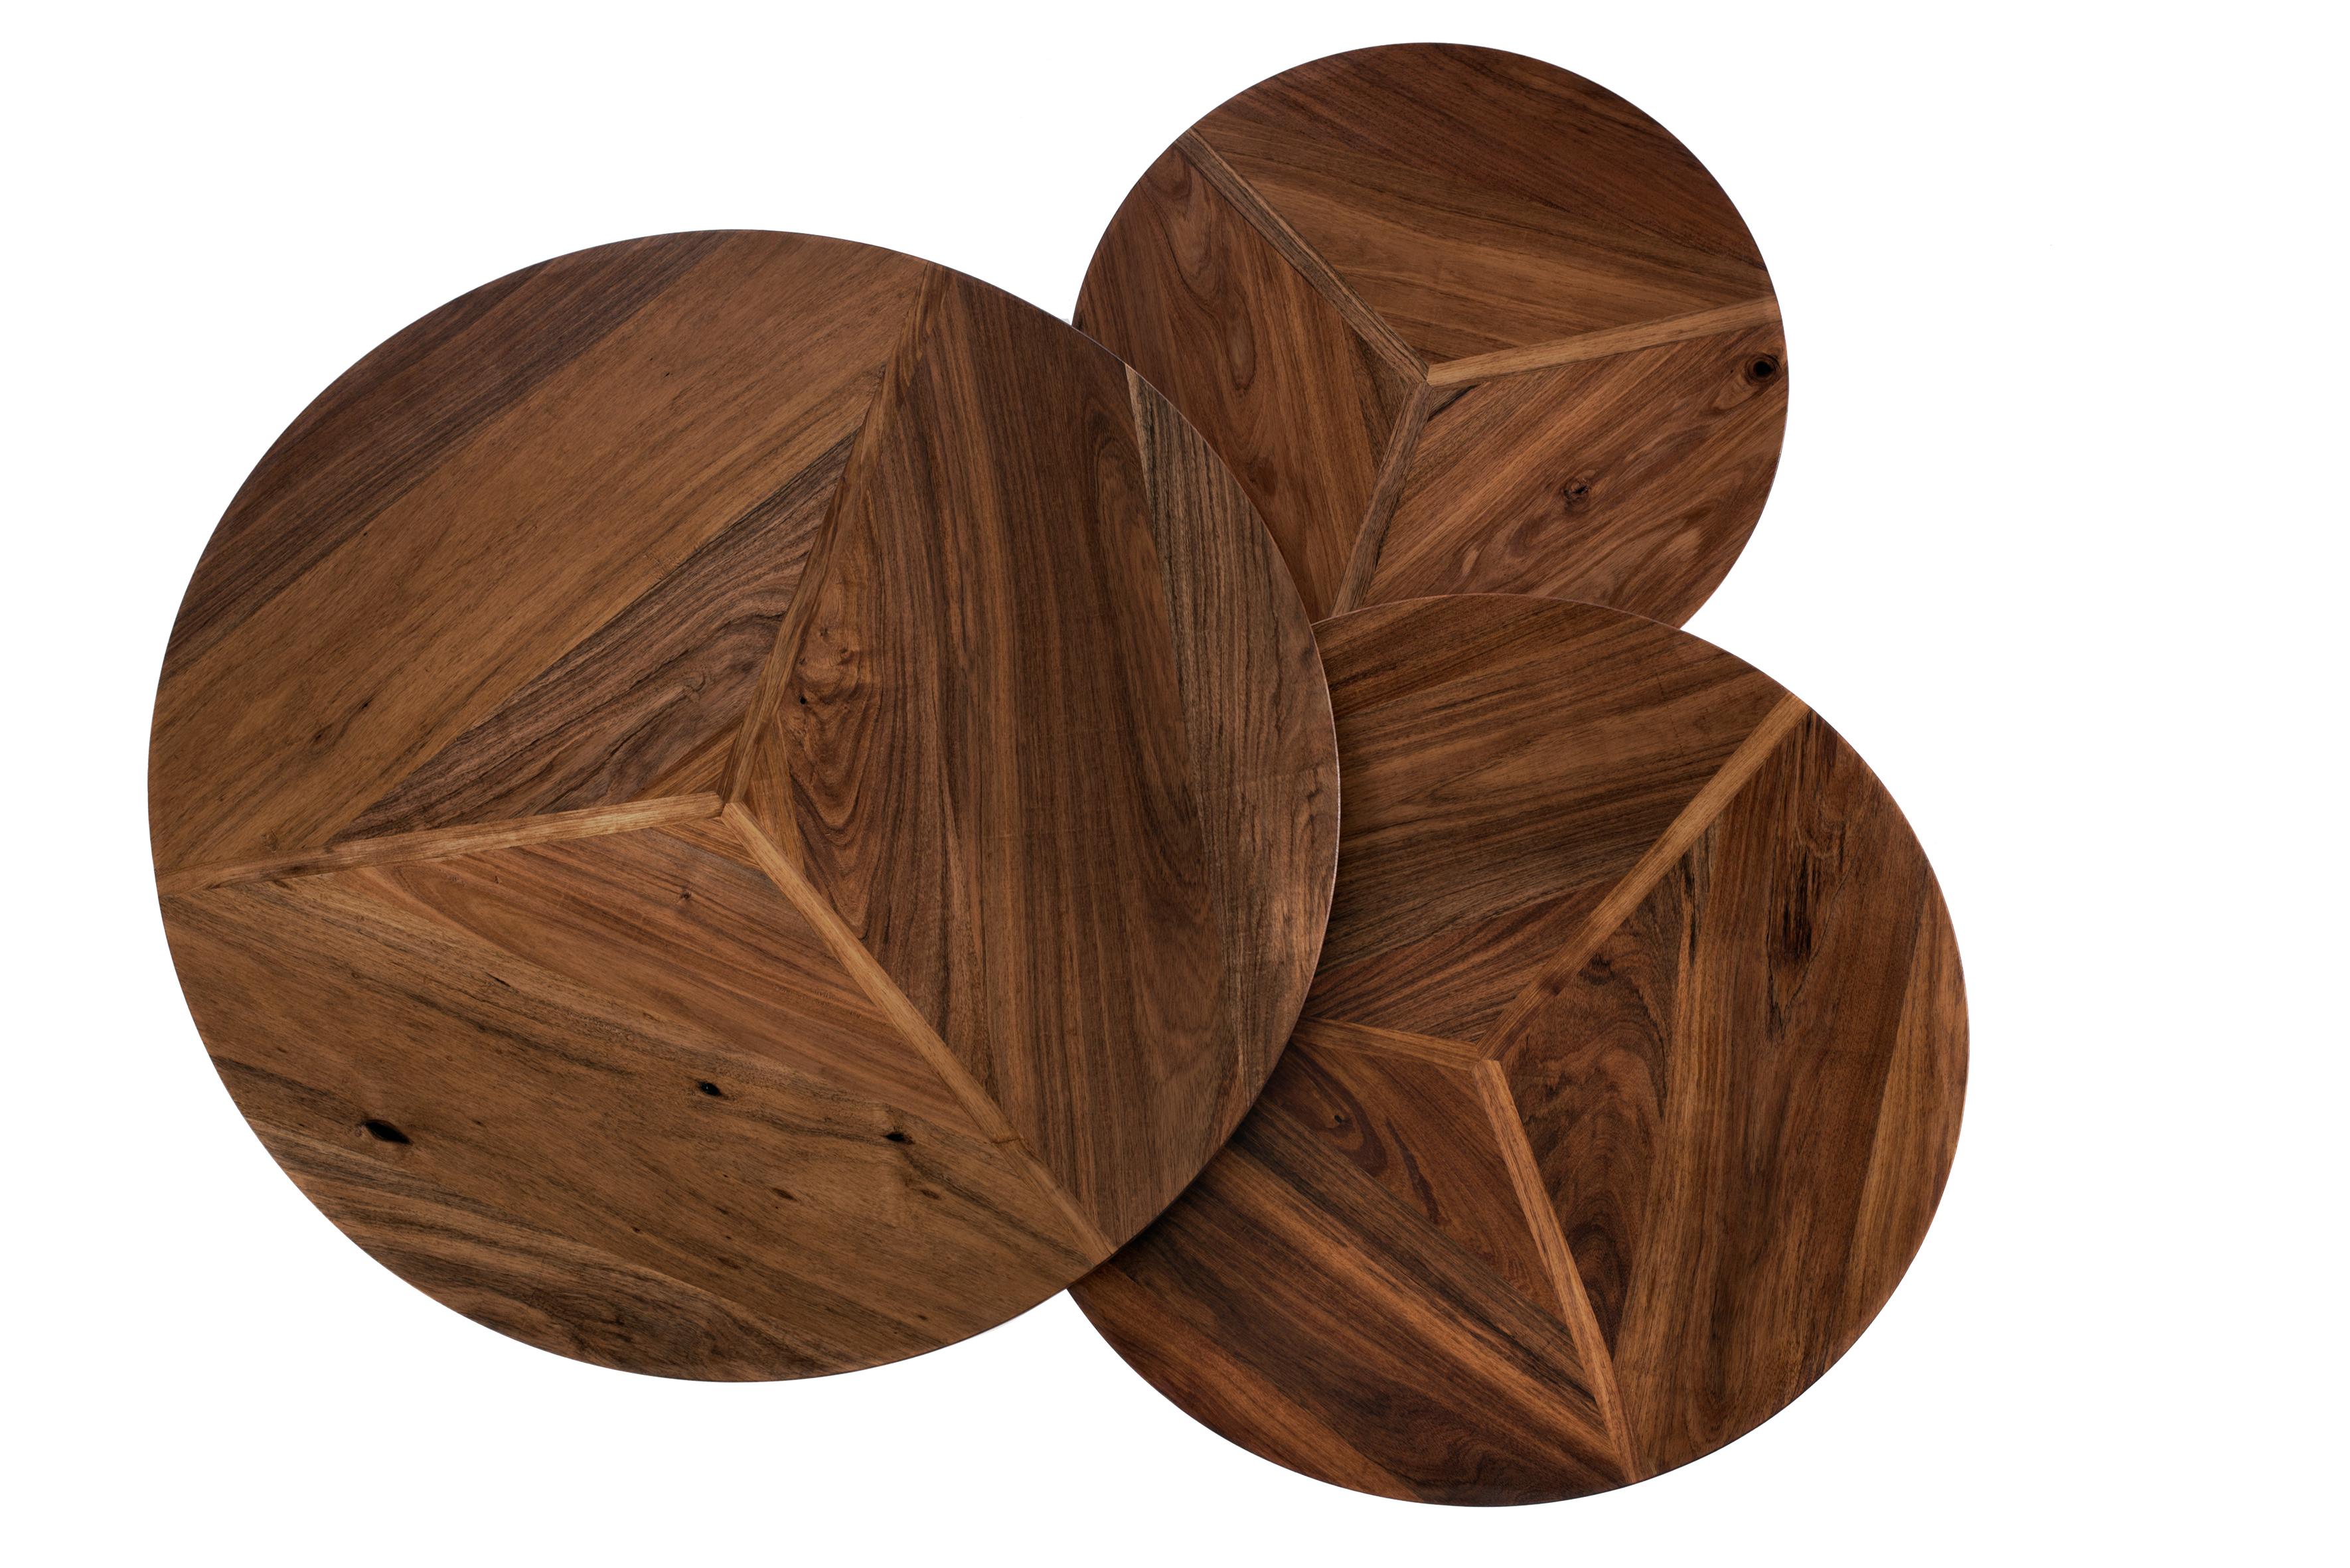 Conçu et réalisé avec des assemblages qui font la part belle à l'artisanat du bois. Ces tables intemporelles se caractérisent par trois segments de bois et une structure qui dépasse de la surface. Chaque détail des pièces témoigne de la qualité des